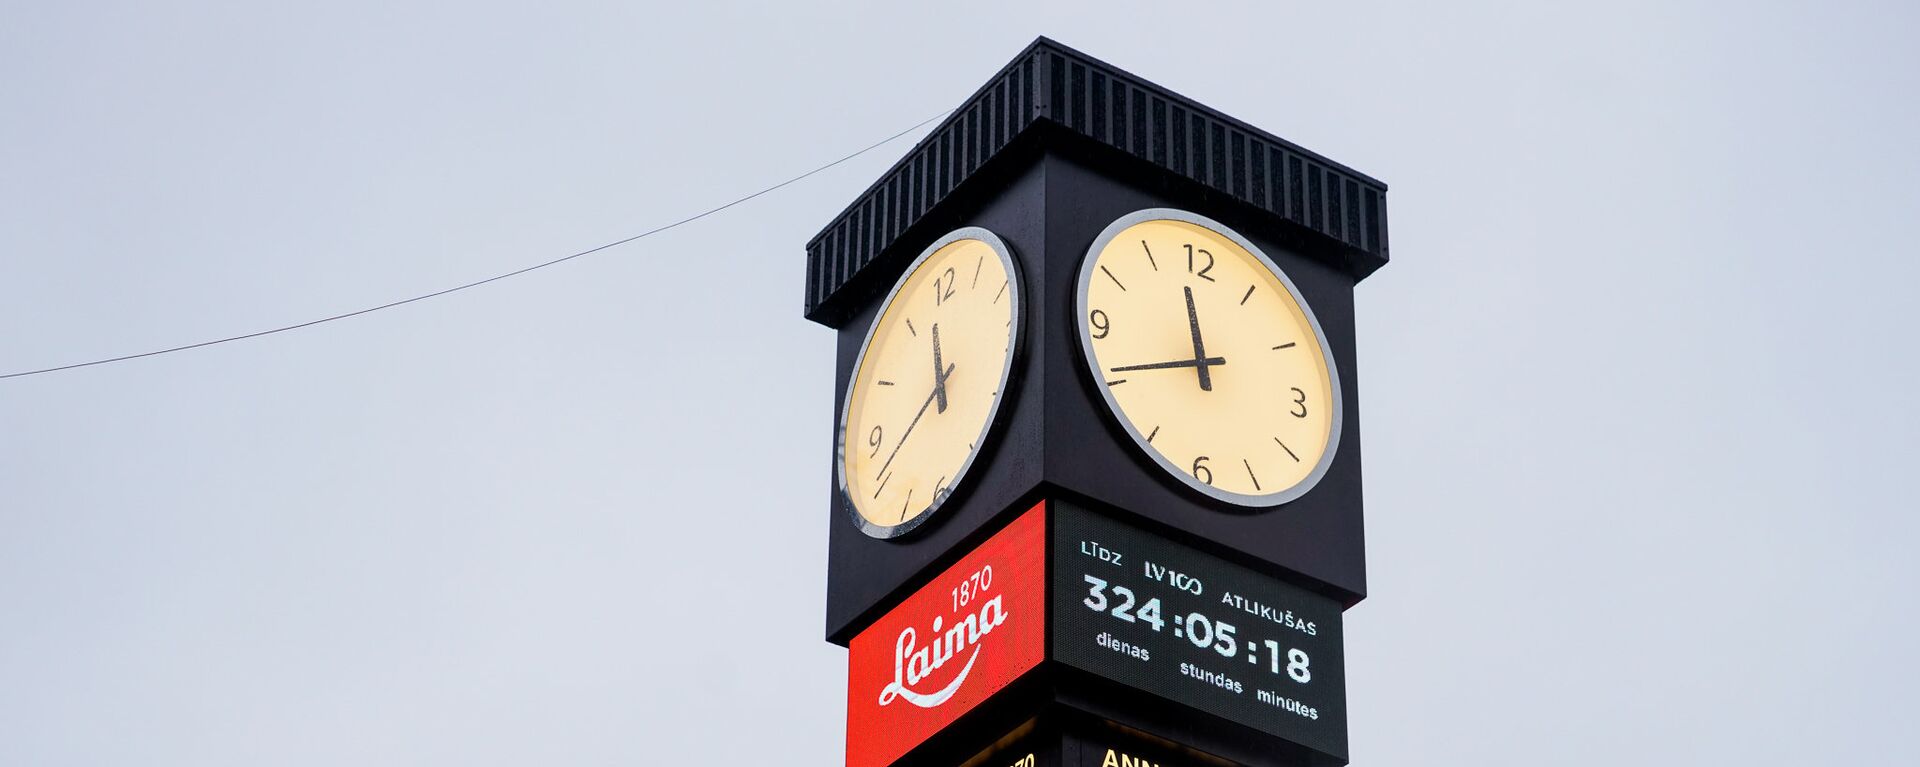 Отреставрированные часы Laima теперь отсчитывают время до 100-летия Латвии - Sputnik Латвия, 1920, 30.03.2019